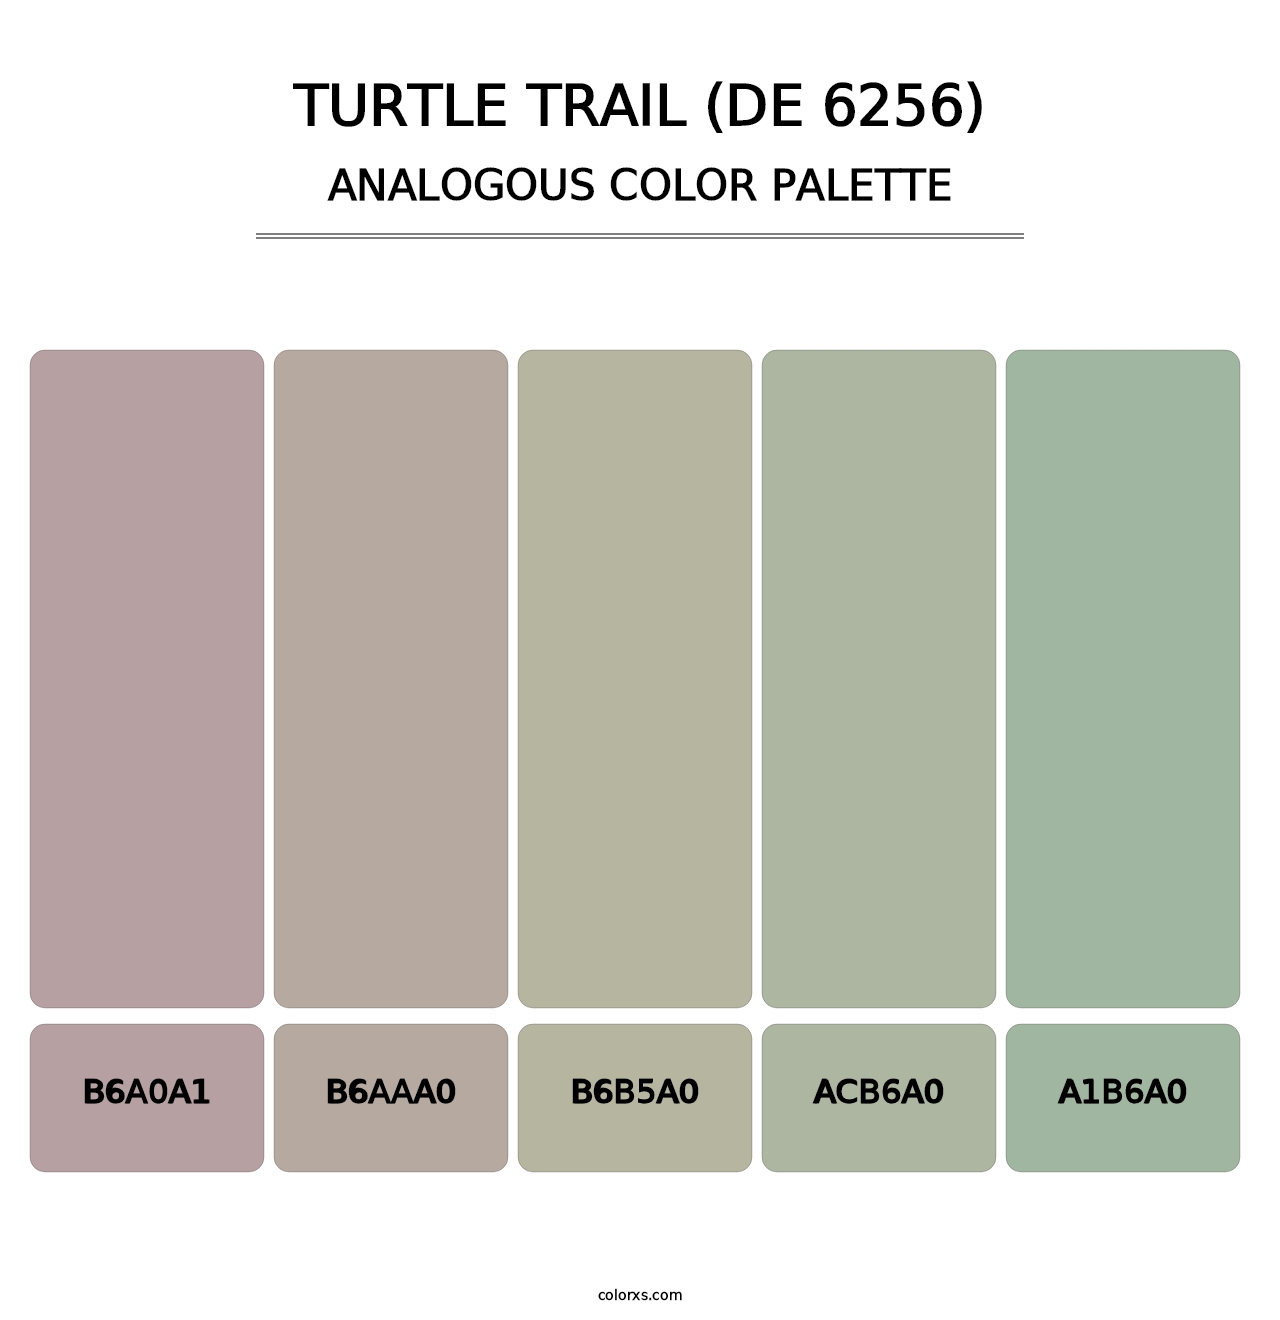 Turtle Trail (DE 6256) - Analogous Color Palette